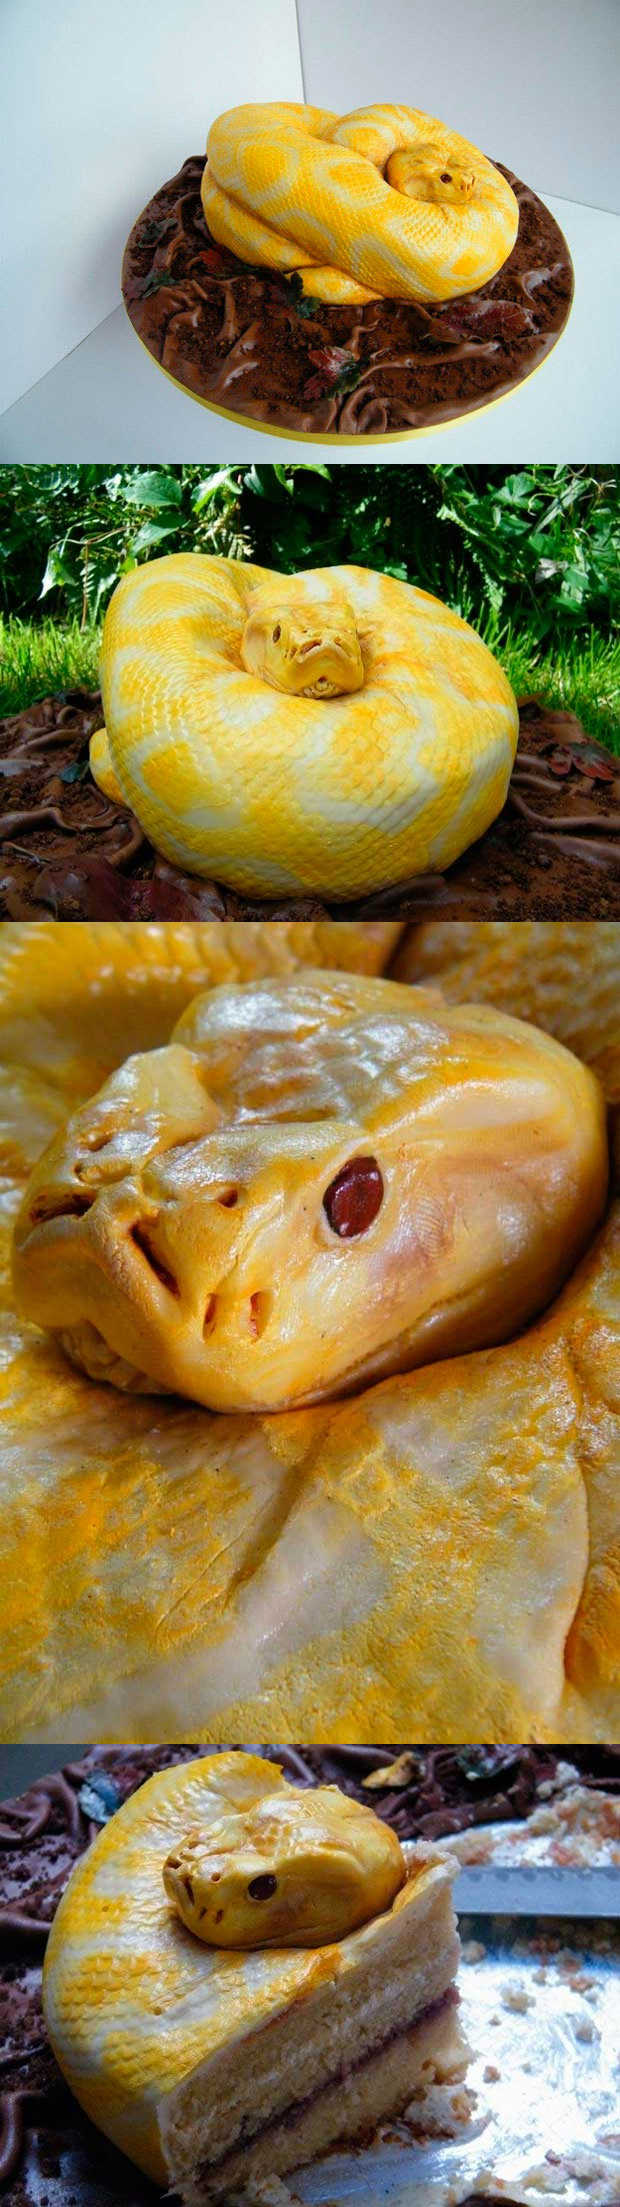 Tartas orginales: Serpiente pitón